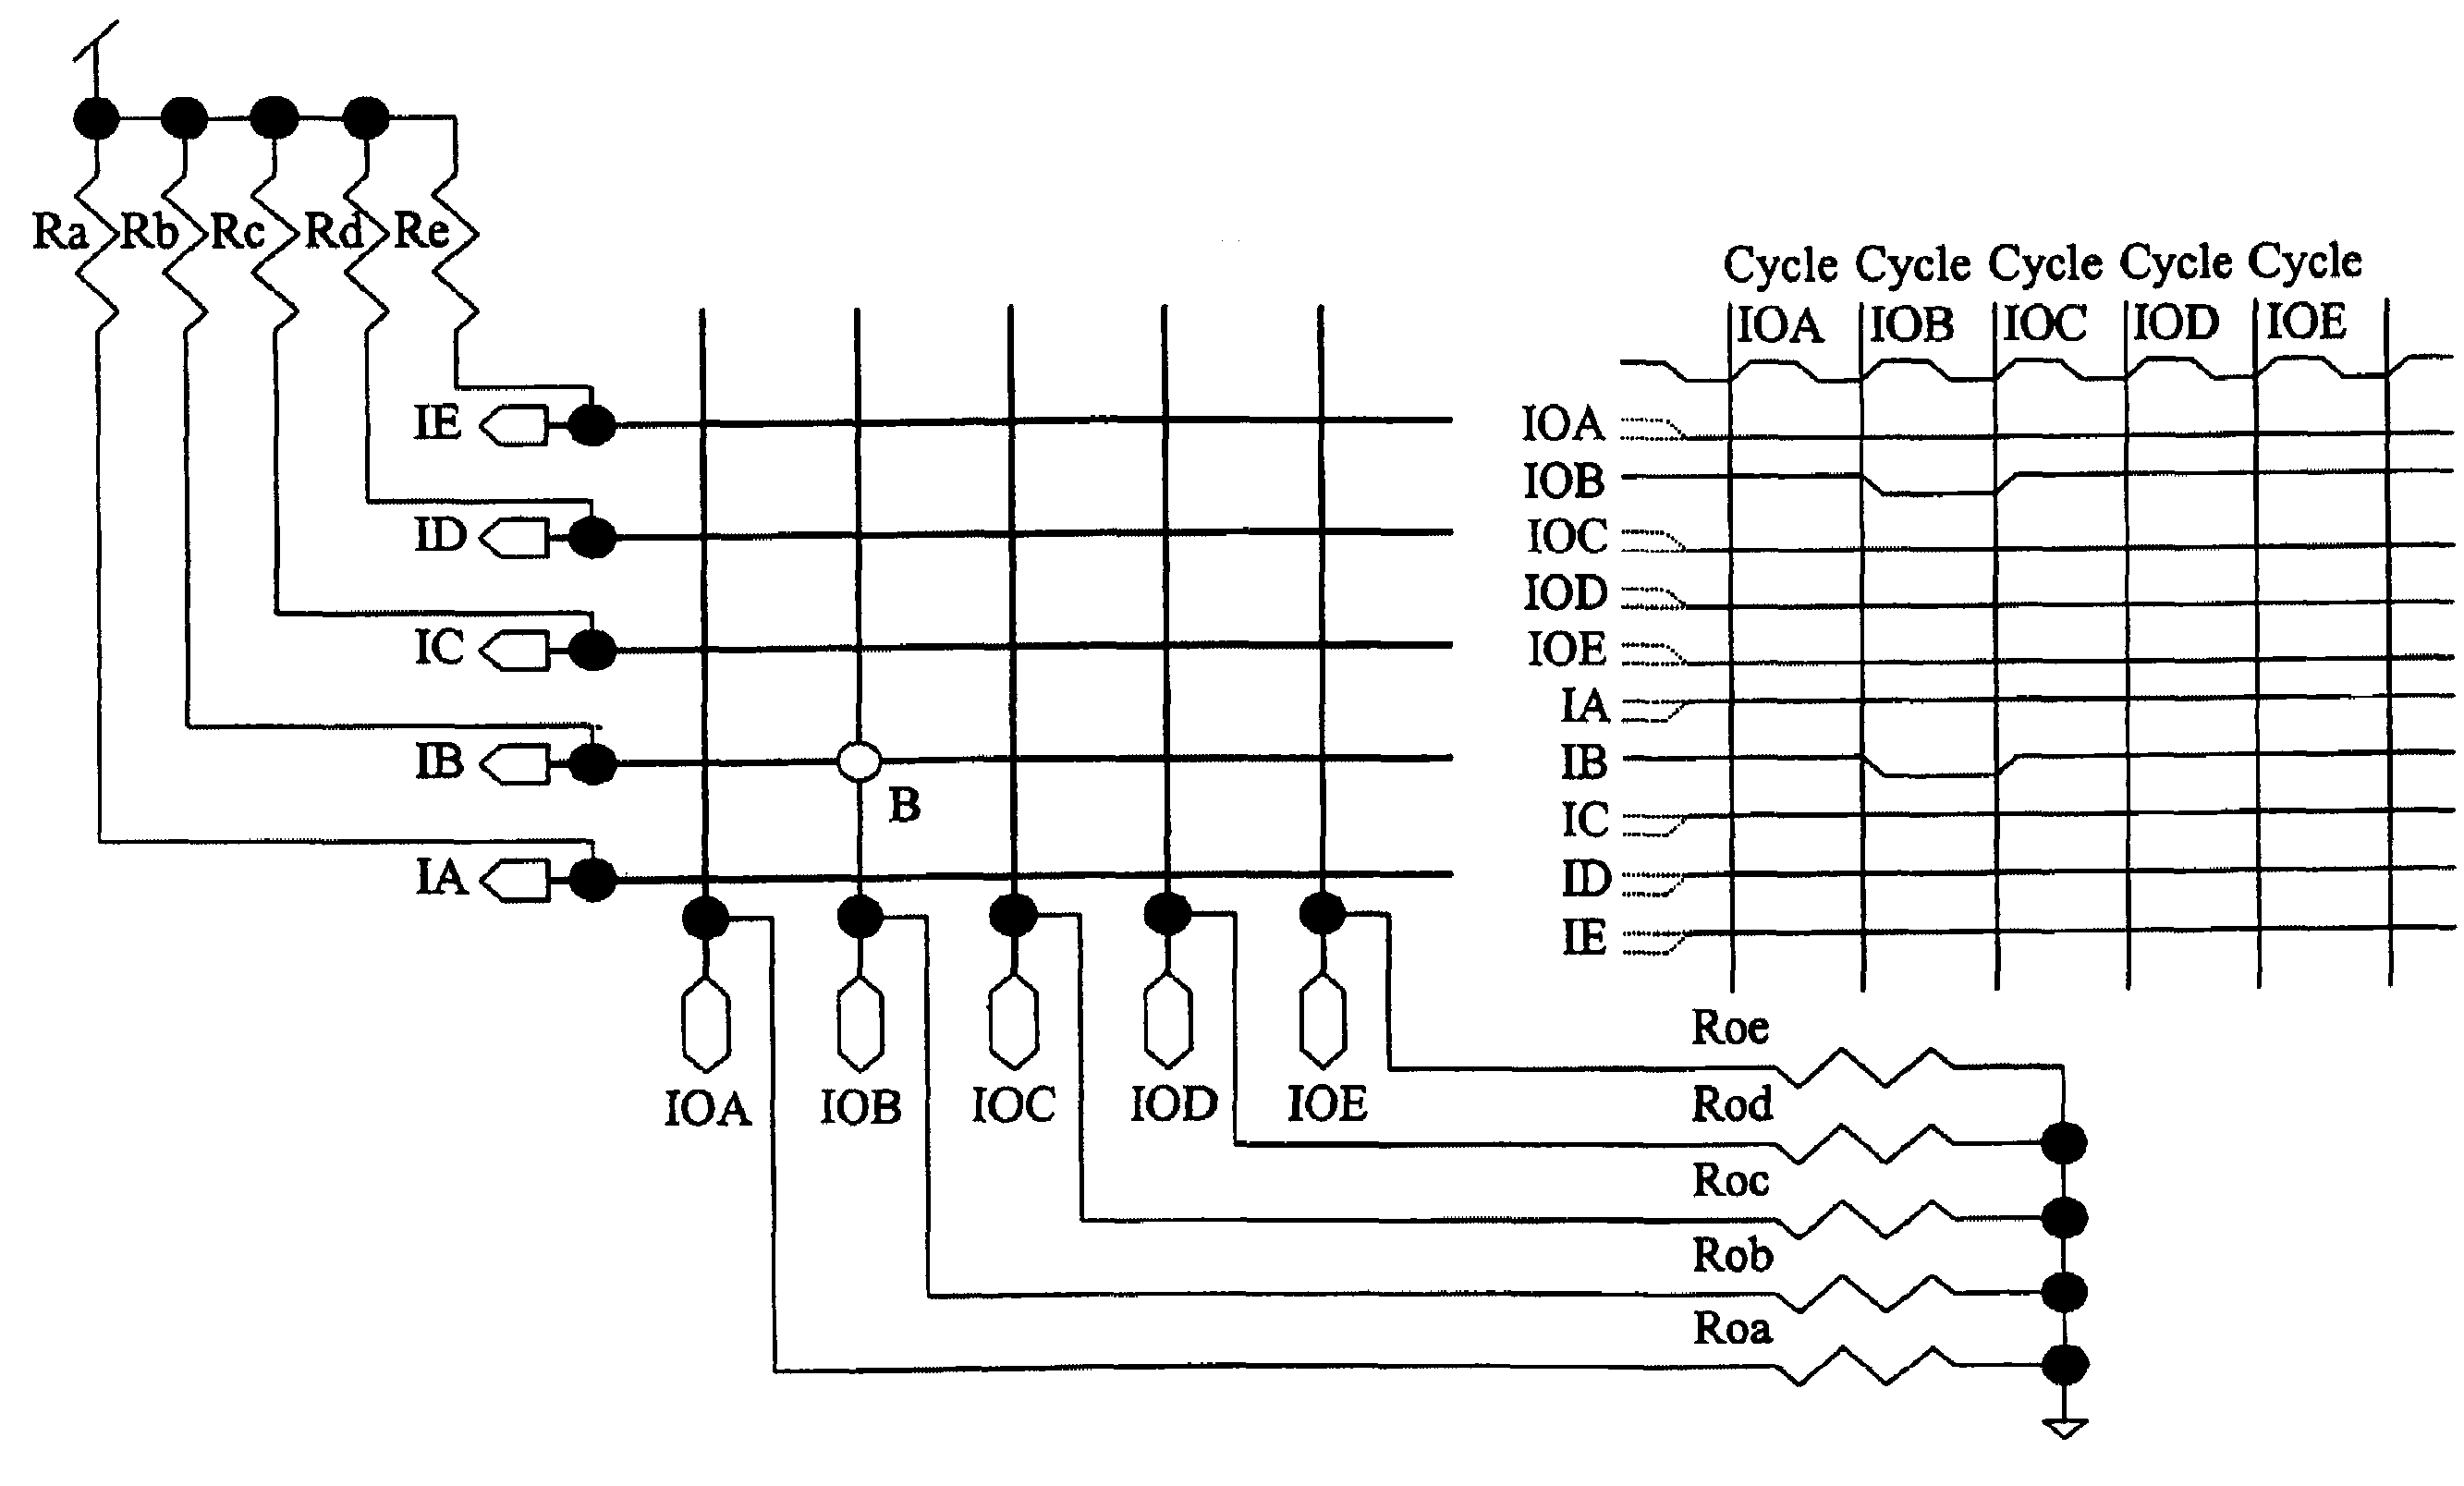 Logic circuit using hardware to process keyboard scanning